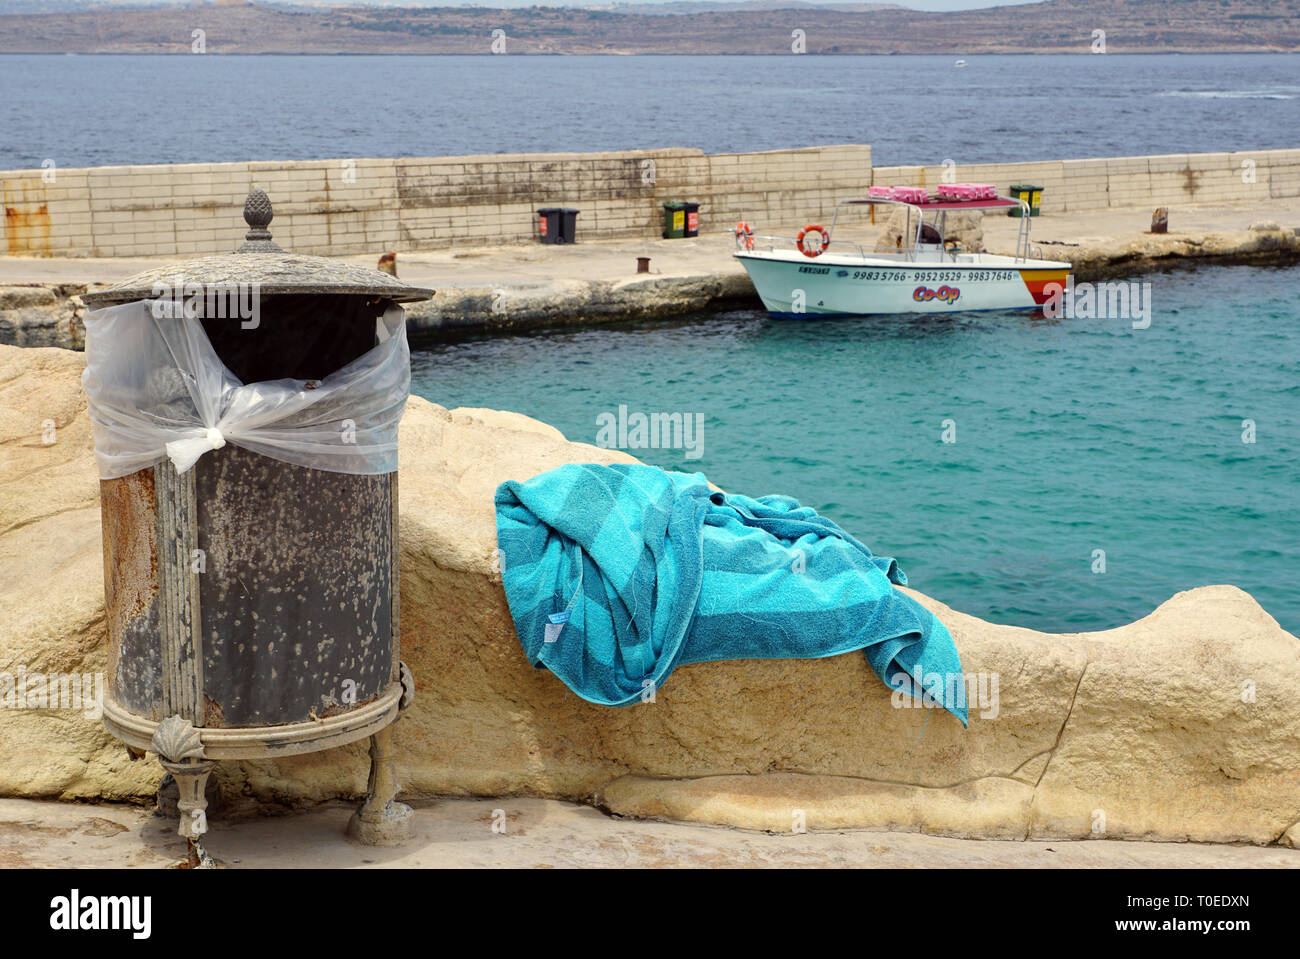 Strandtuch Neben dekorativen Mülleimer, Schiff und Meer im Hintergrund Stockfoto